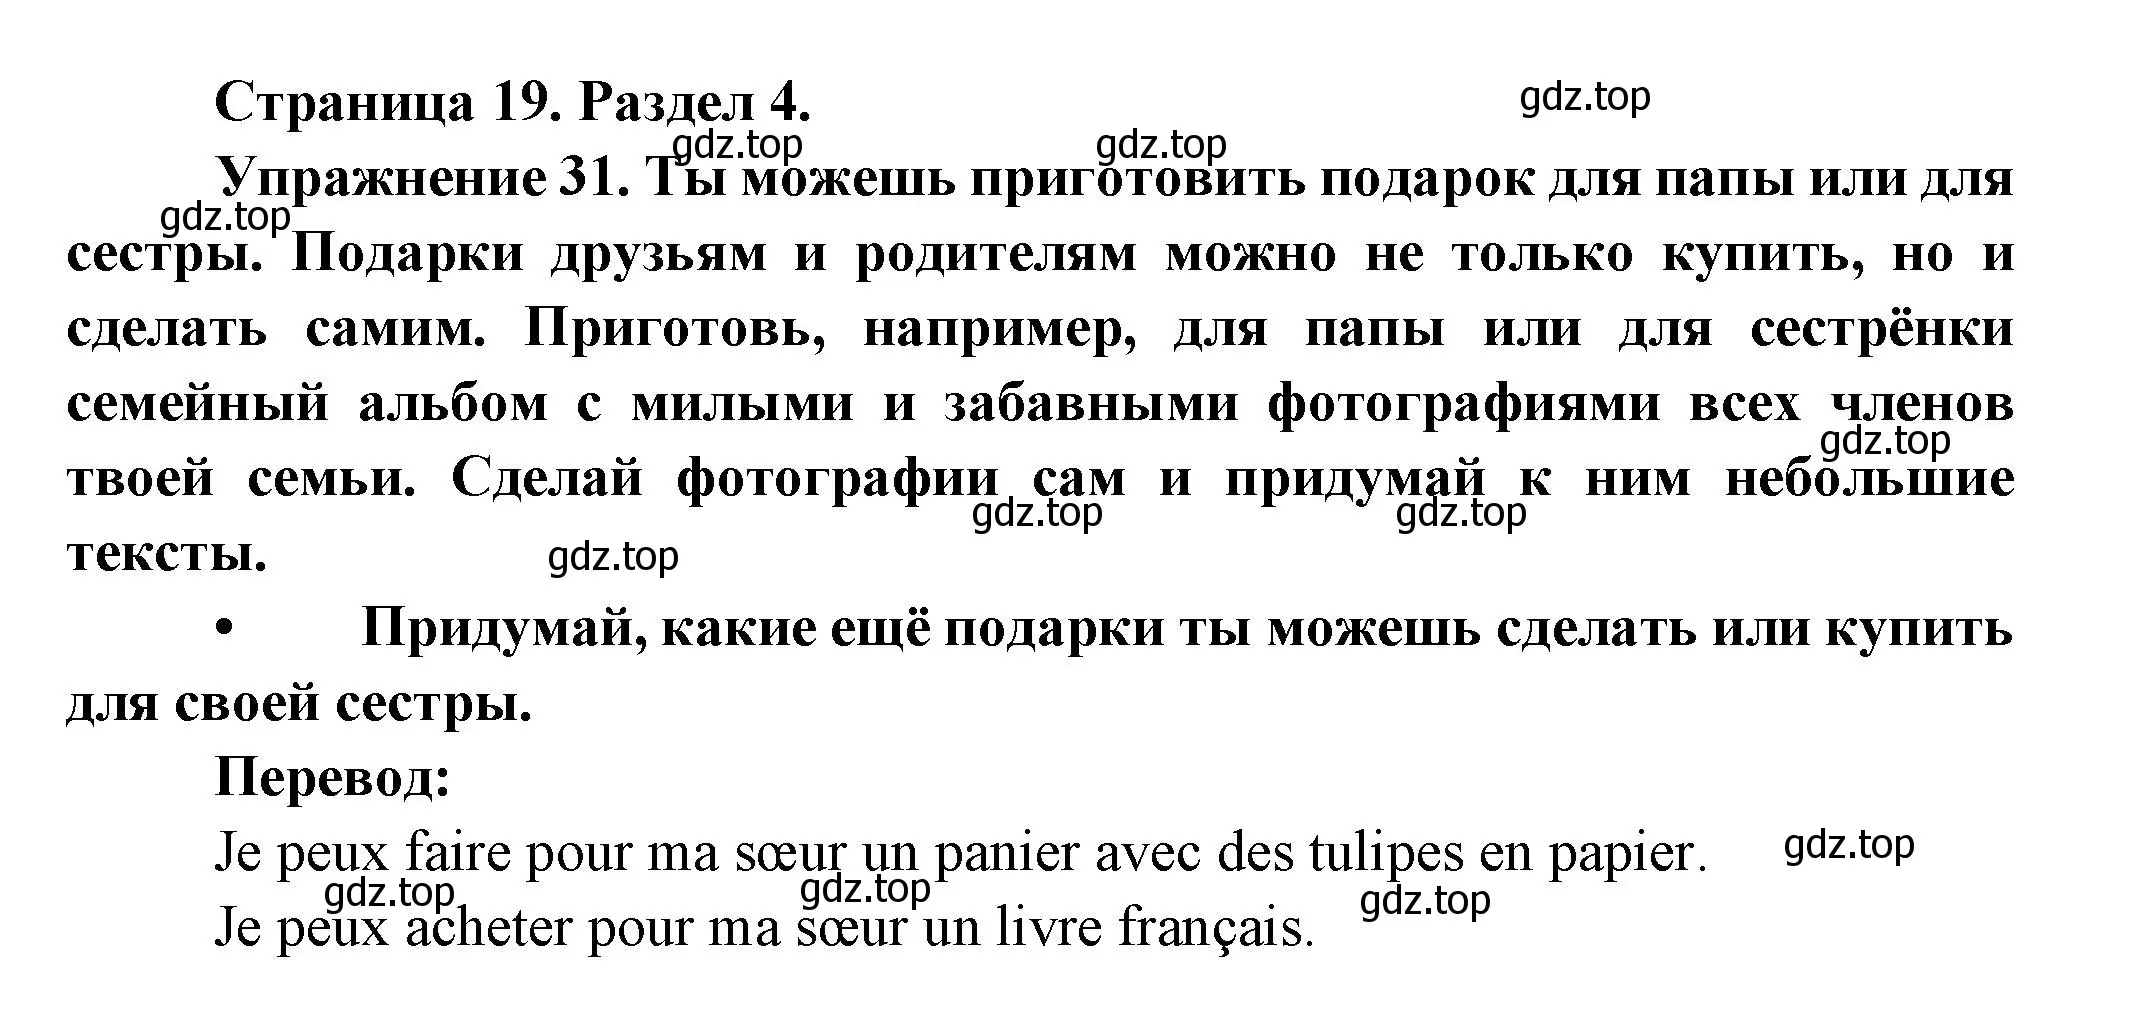 Решение номер 31 (страница 19) гдз по французскому языку 5 класс Береговская, Белосельская, учебник 2 часть